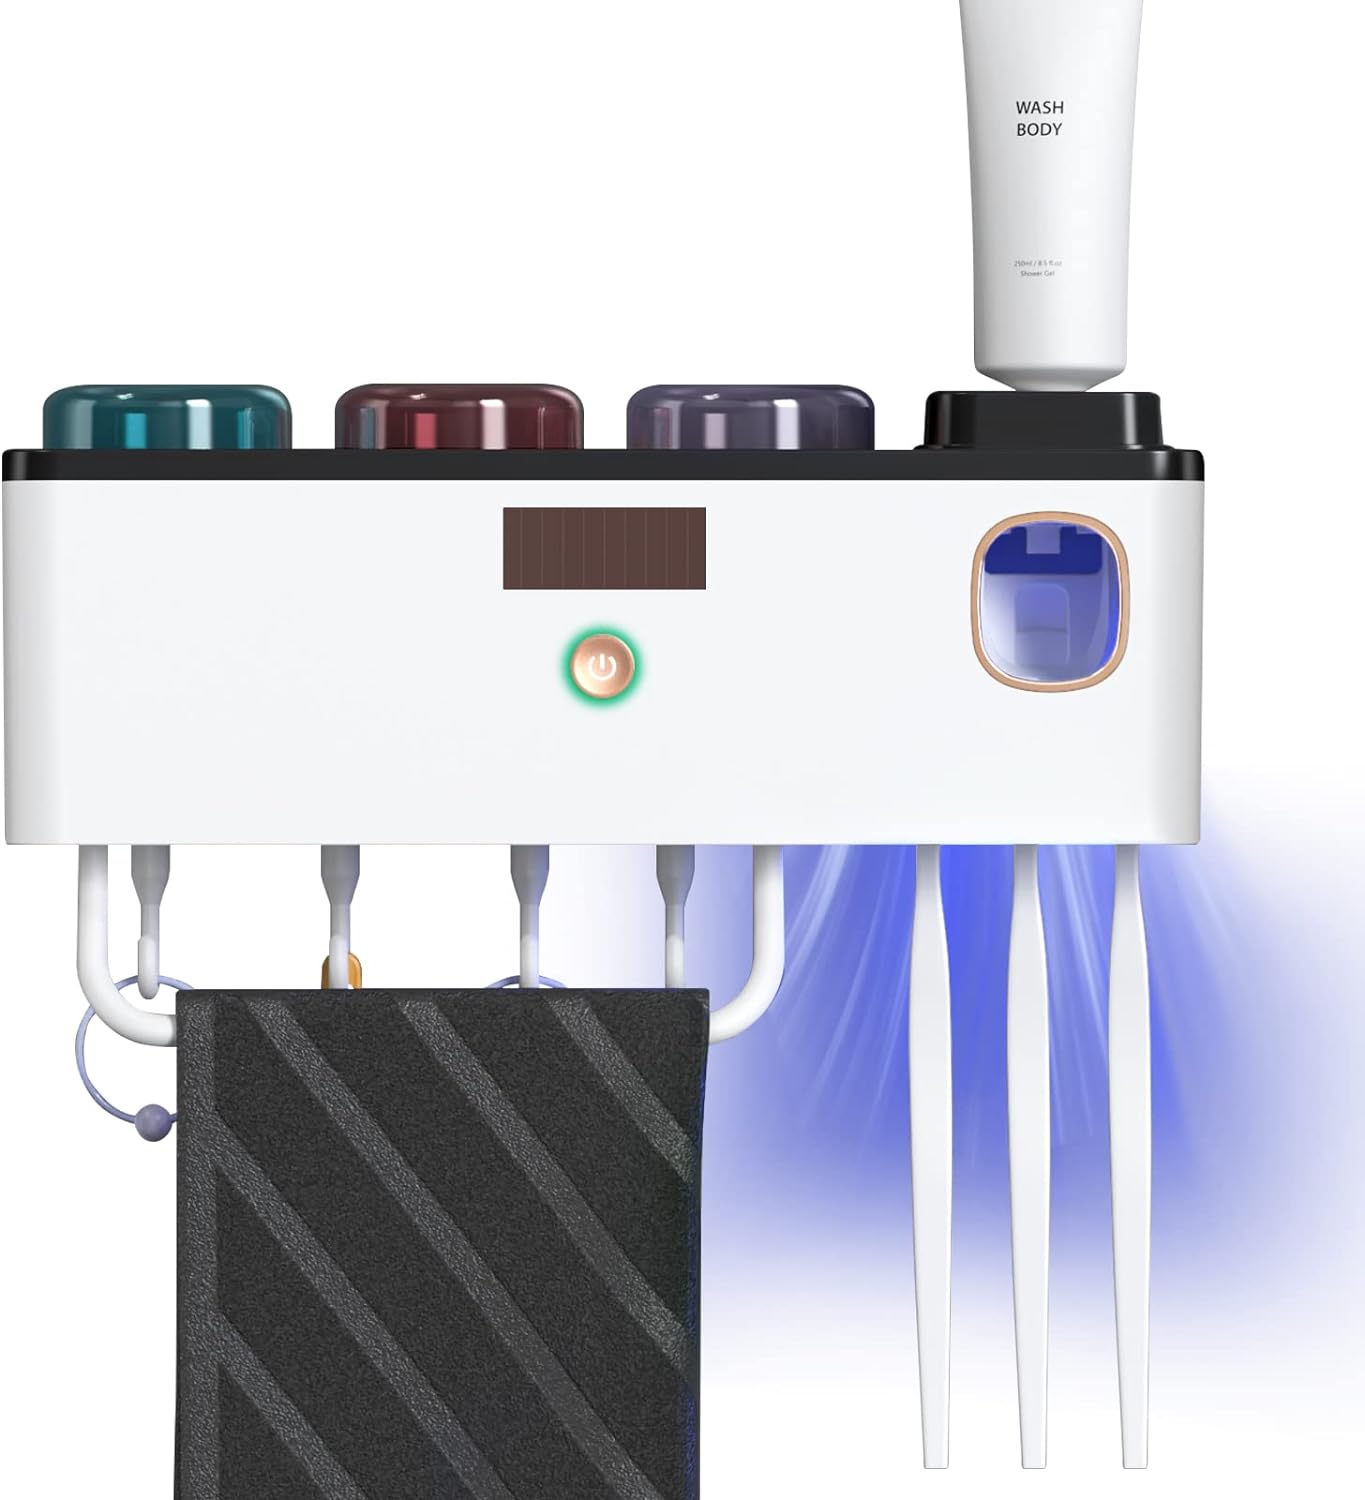 Sterilizator UV pentru periute de dinti, Dozator de pasta, 4 pahare individuale cu atasare magnetica, 4 suporturi de sterilizare, montaj pe perete, incarcare USB si panou energie solara, alb